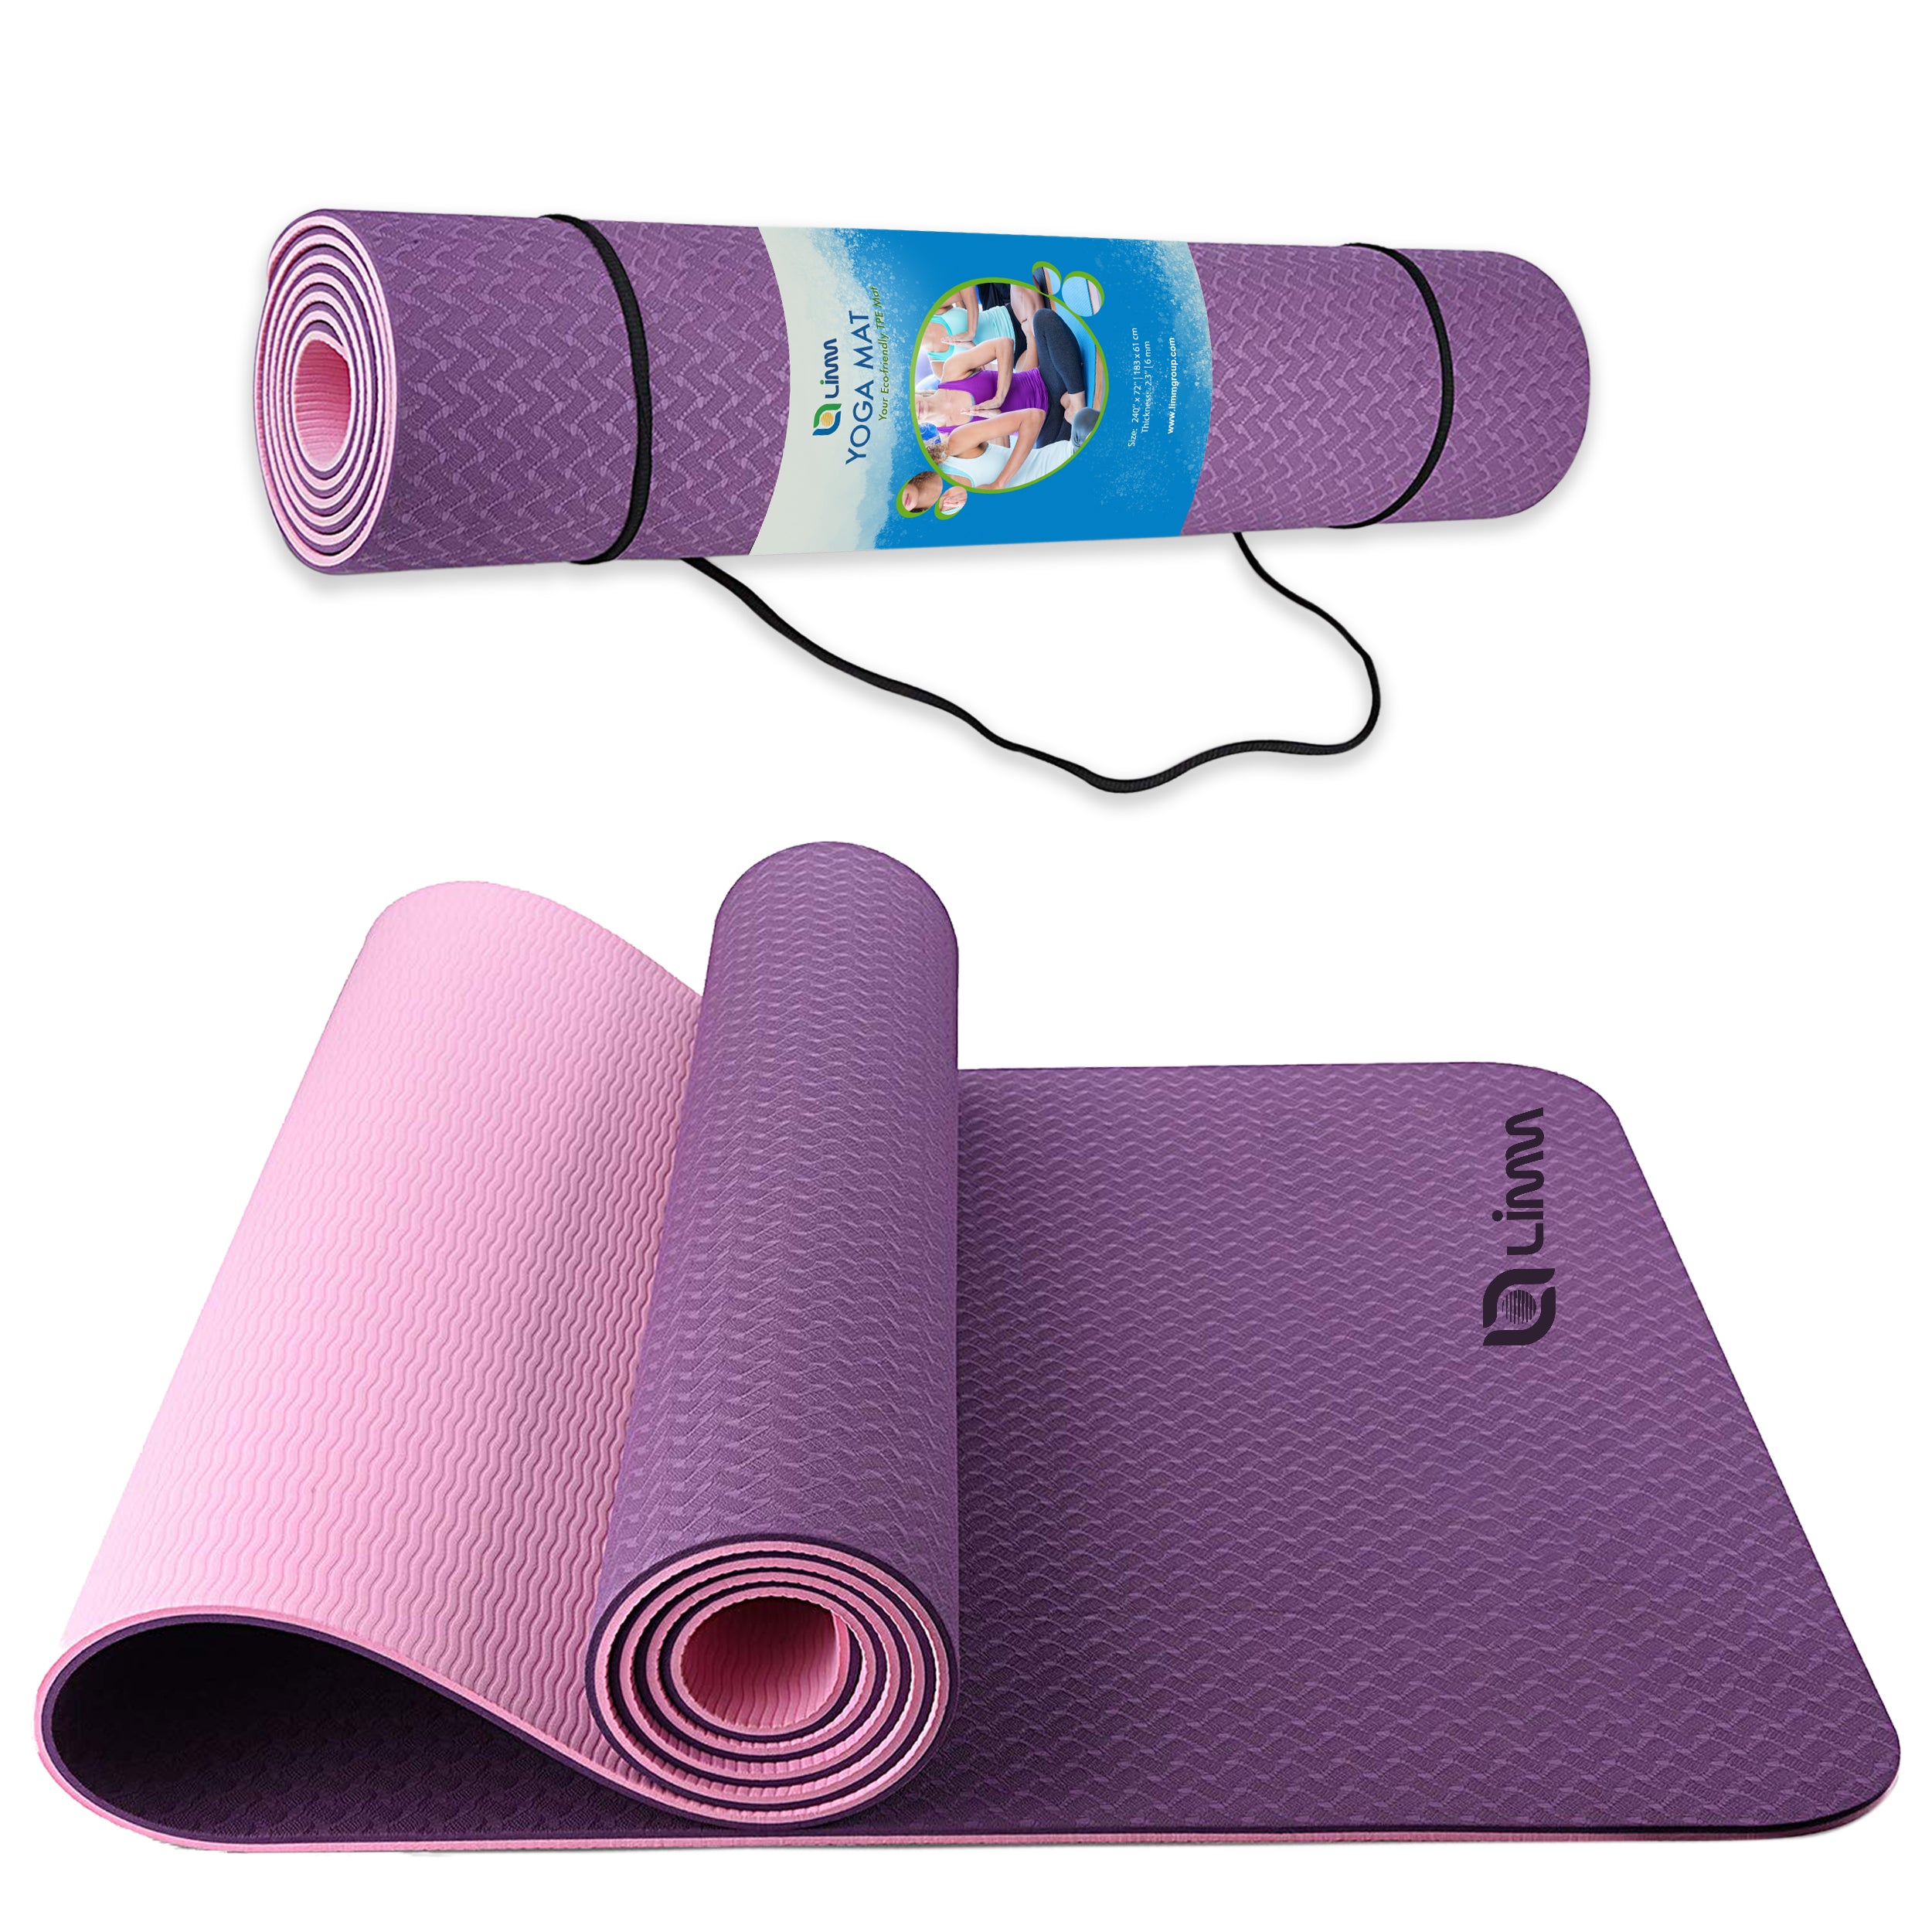 Superior TPE Eco Yoga mat - Passionate Purple - Yogashop